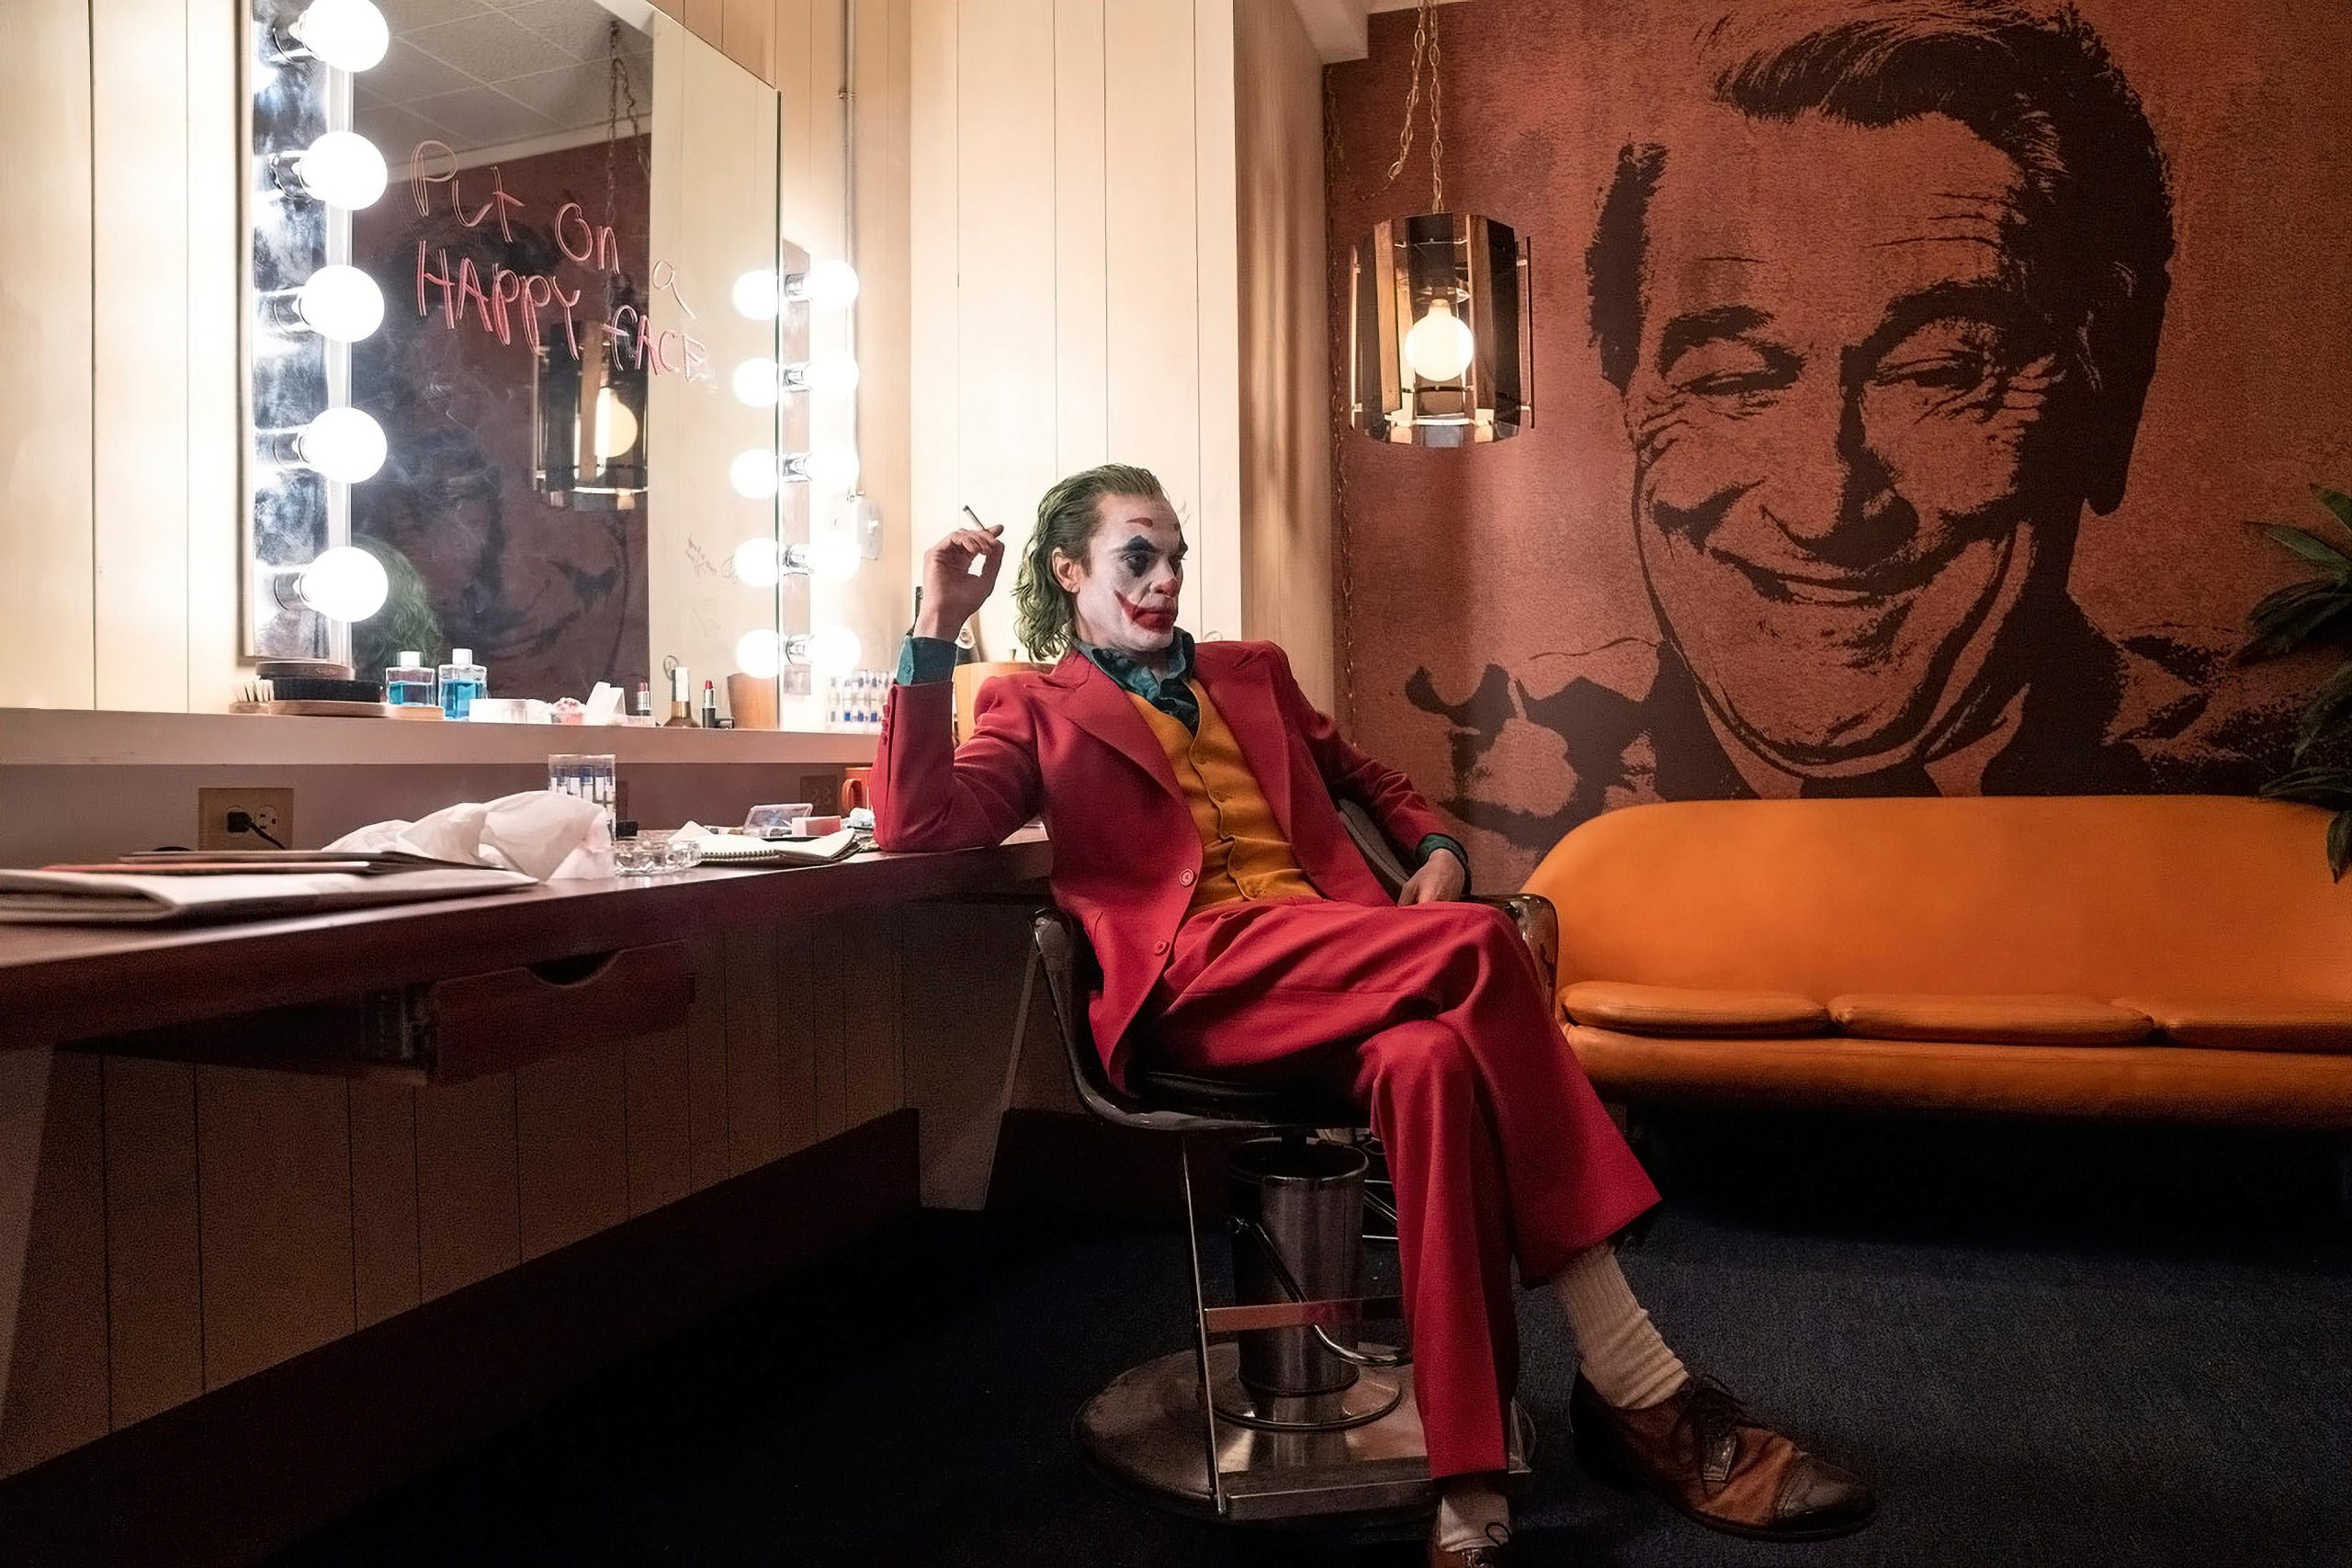 Joker Robert DeNiro happy face Joaquin Phoenix couch makeup wallpaper